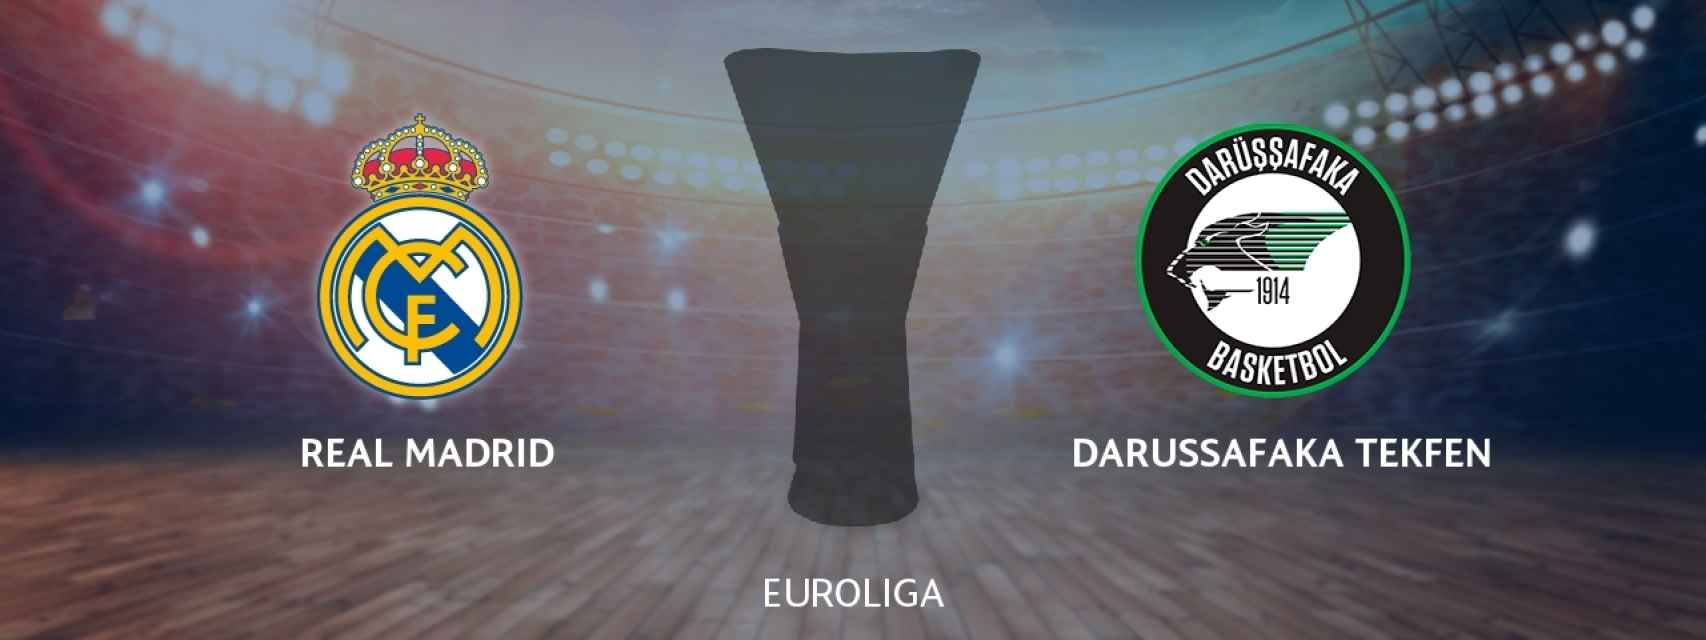 Real Madrid - Darussafaka